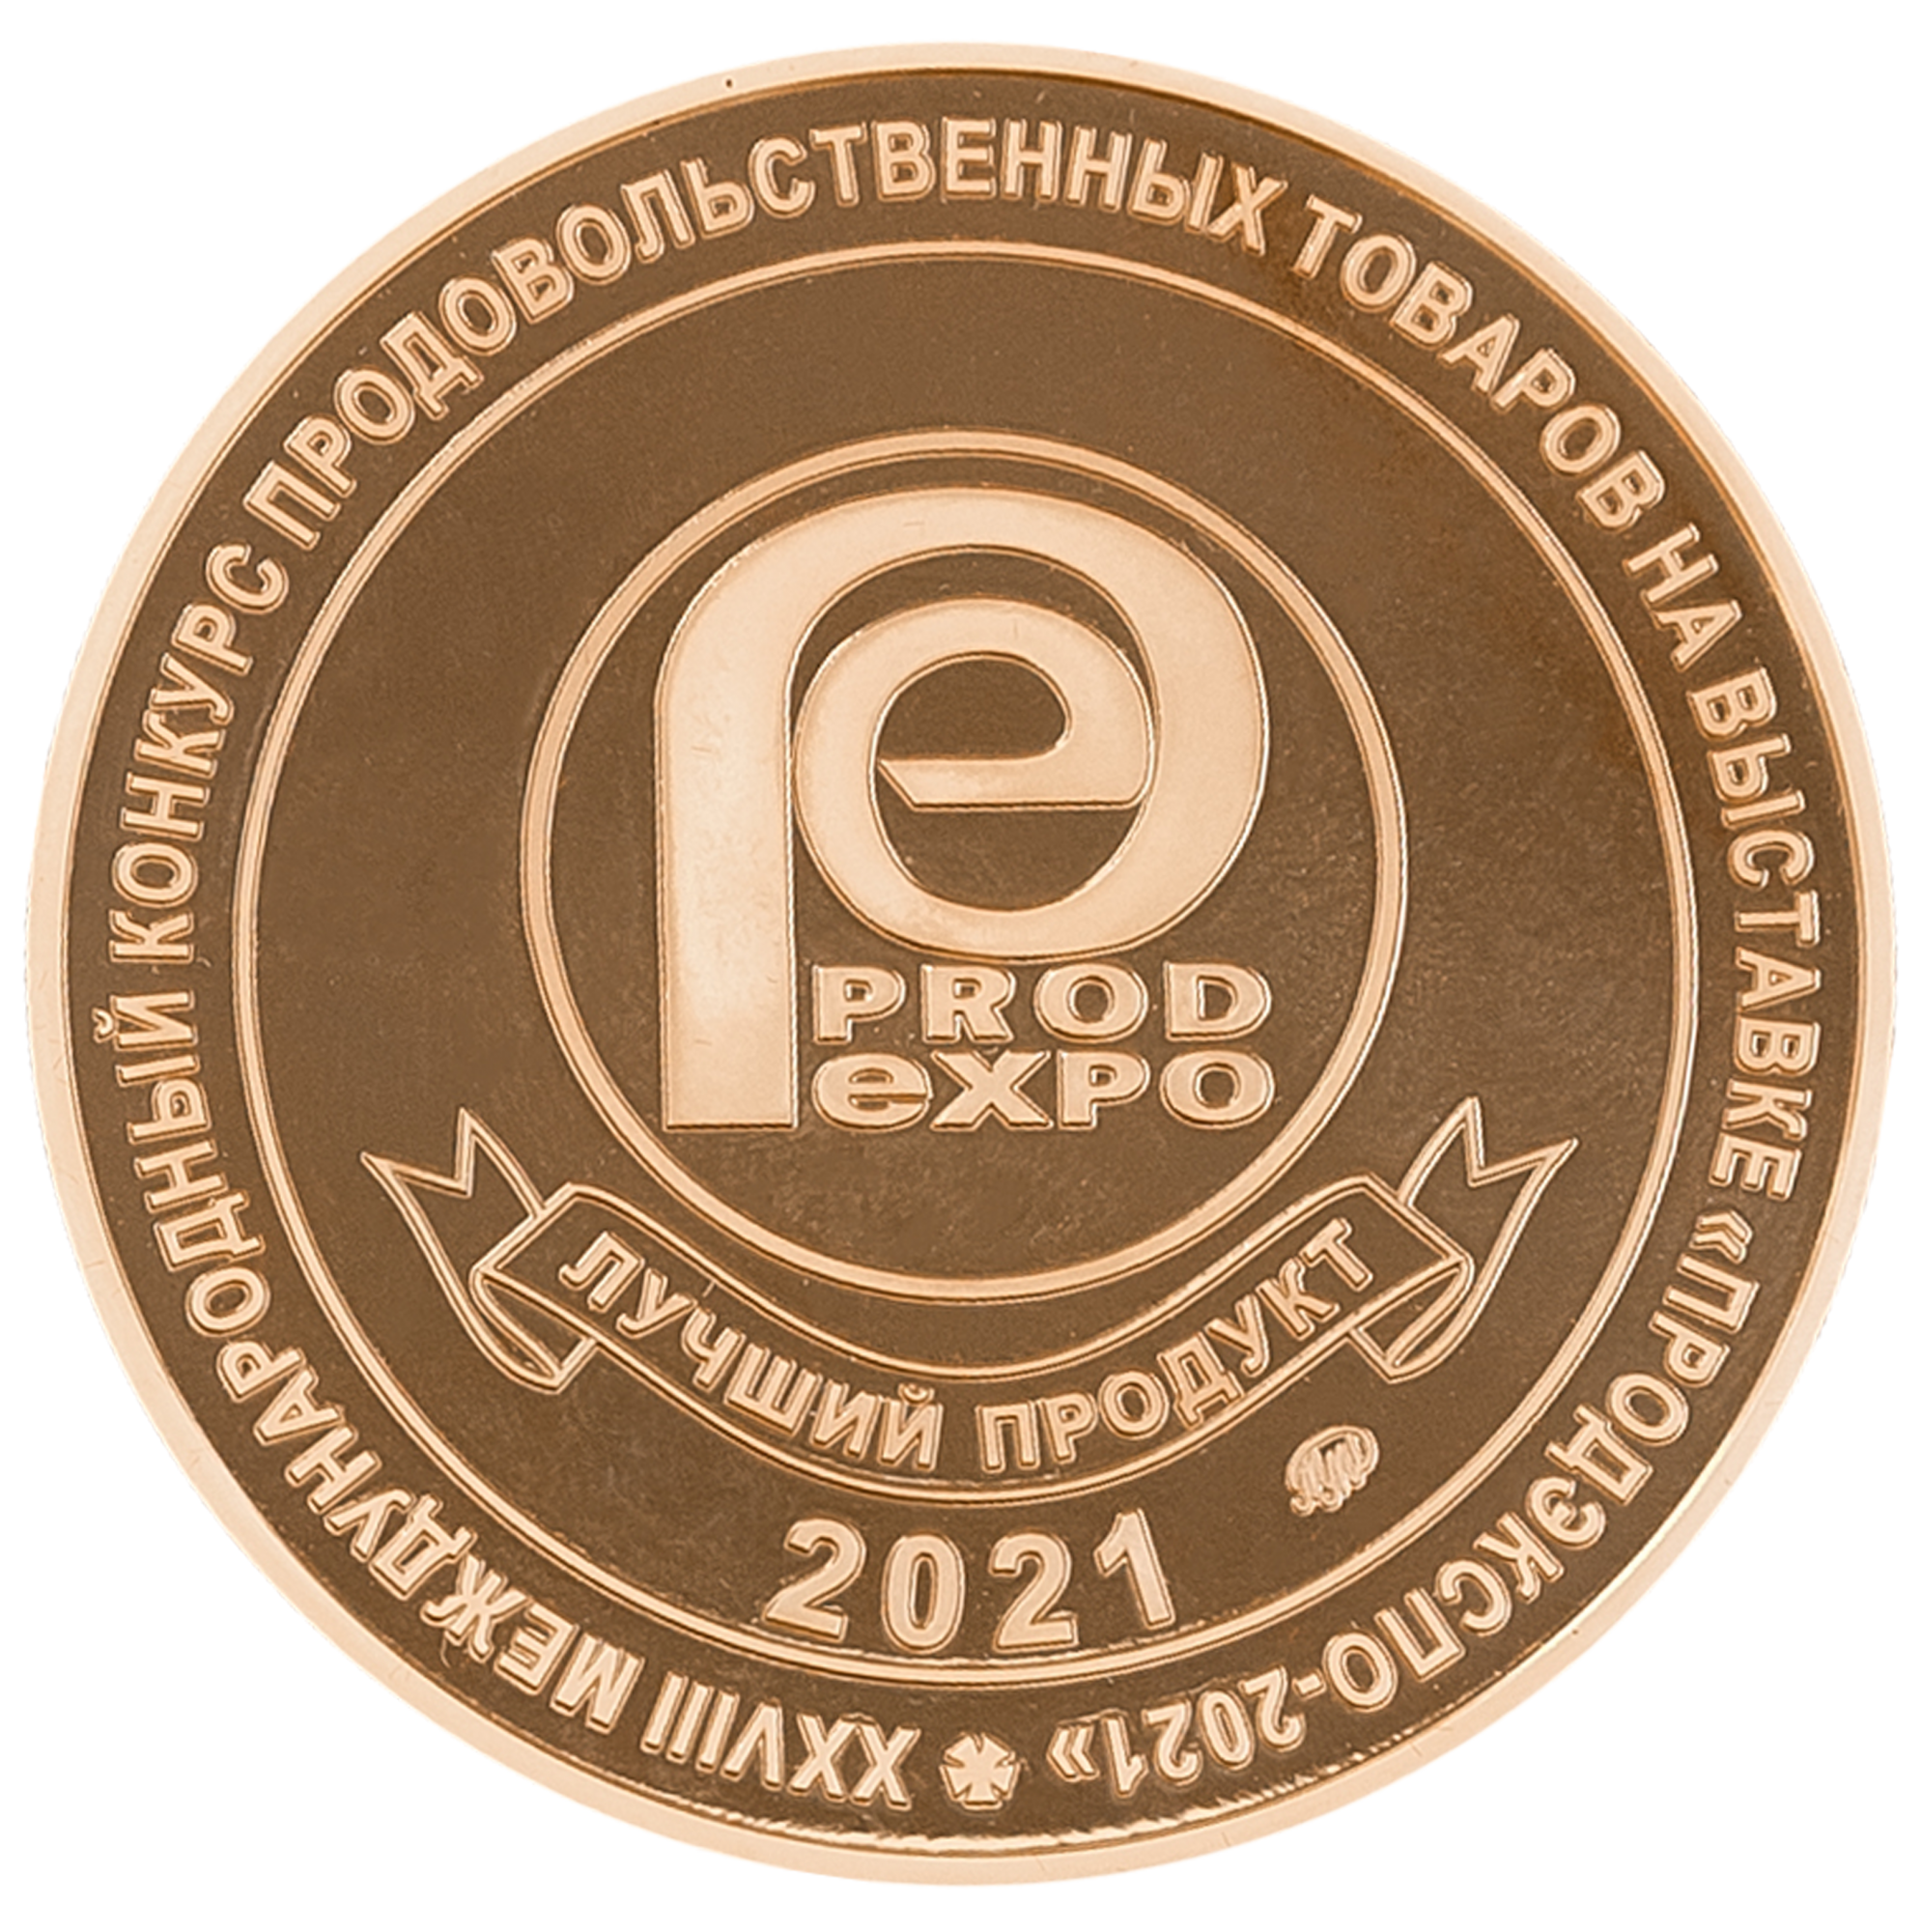 Золотая медаль "Лучший продукт года" на Выставке "ПродЭкспо-2021"